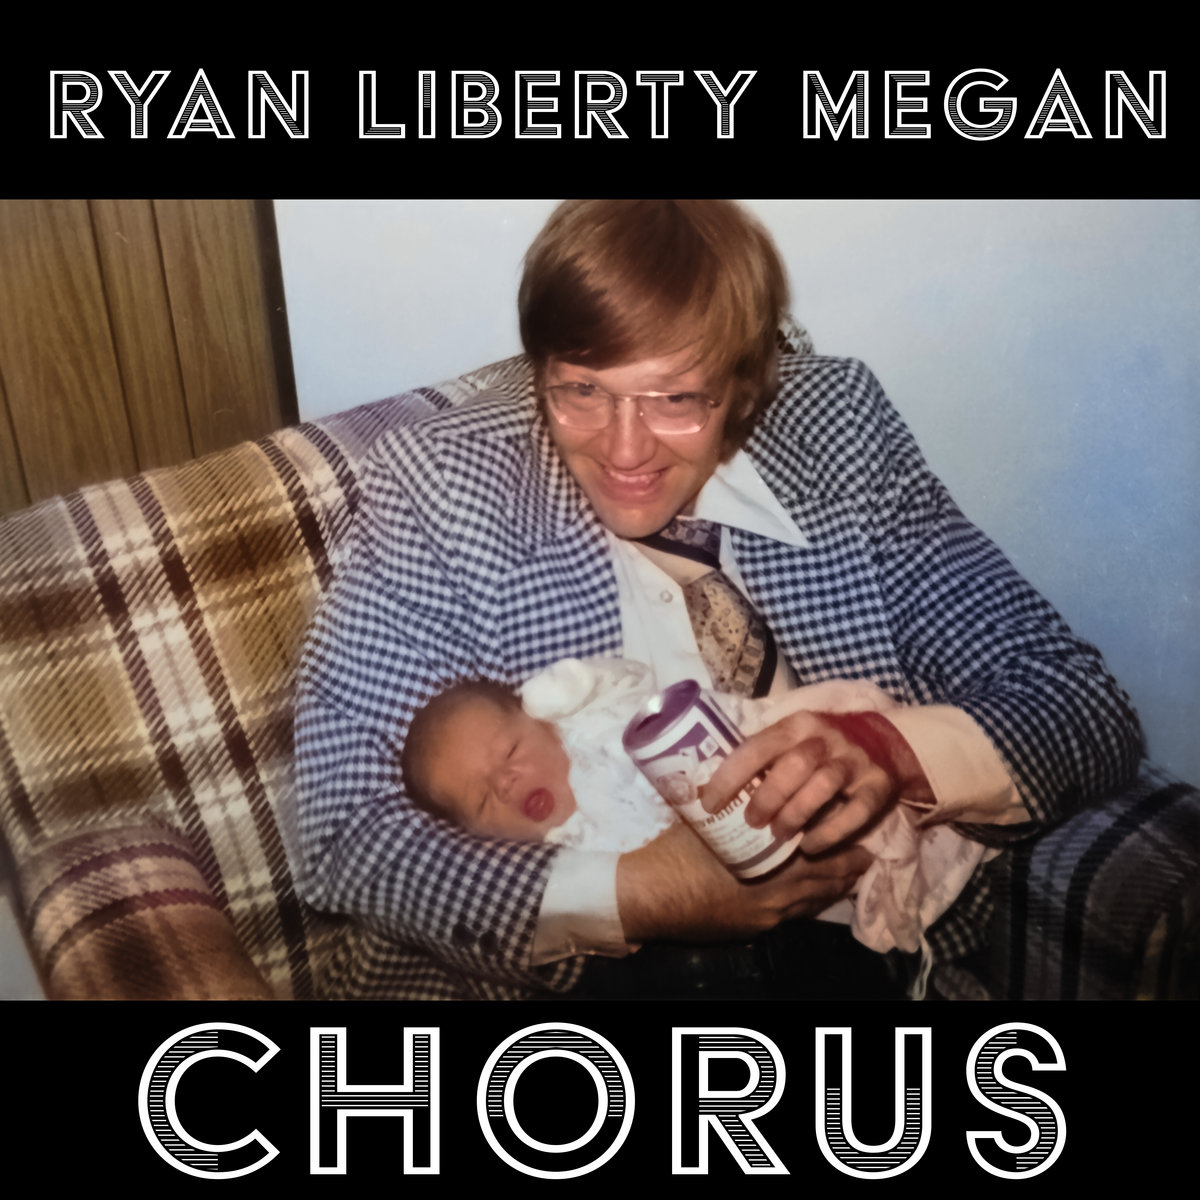 Ryan Liberty Megan “Chorus” single artwork